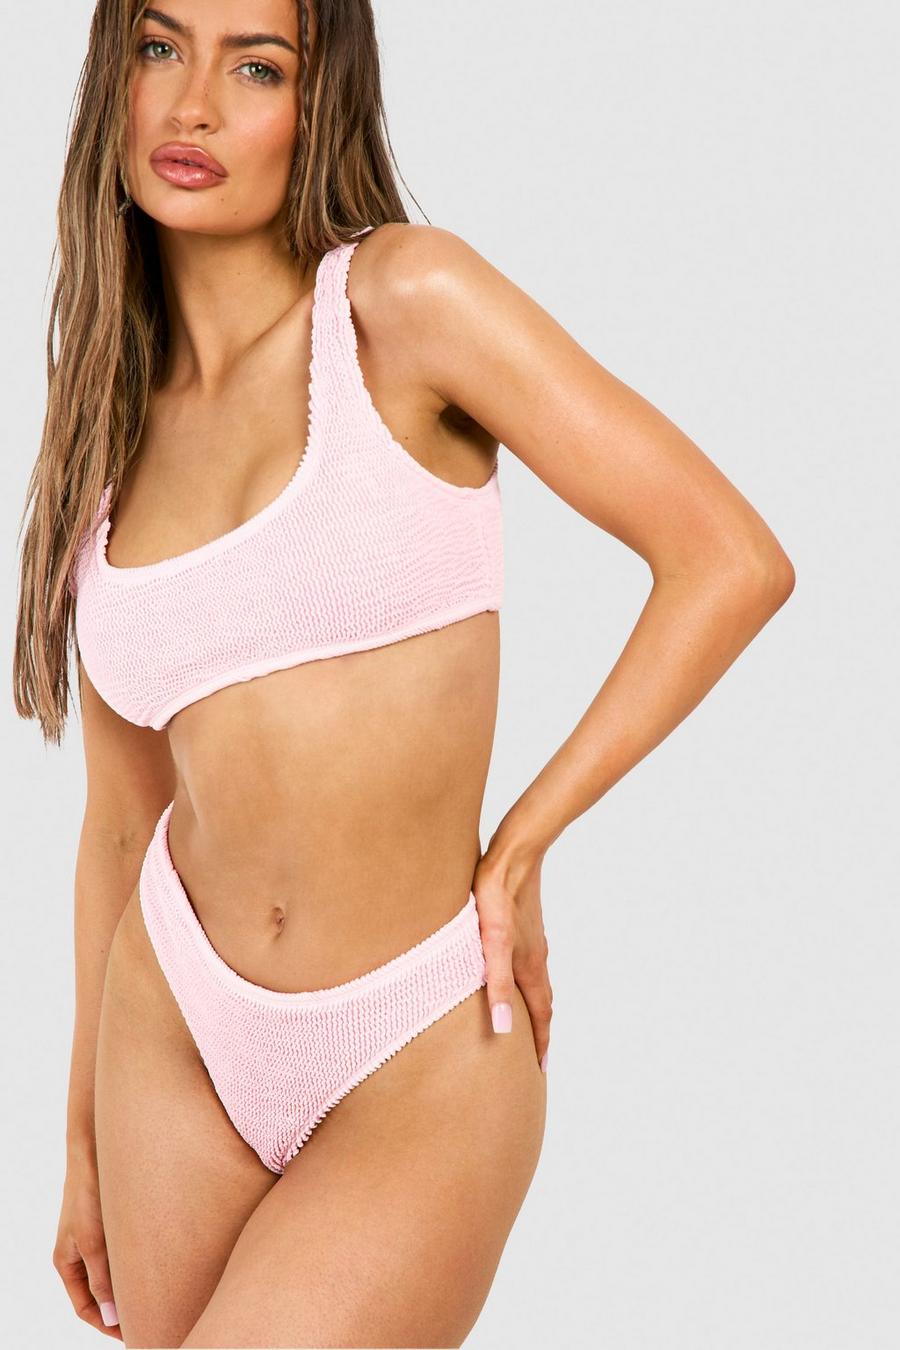 Premium Boomerang Bikinihose in Knitteroptik, Pastel pink